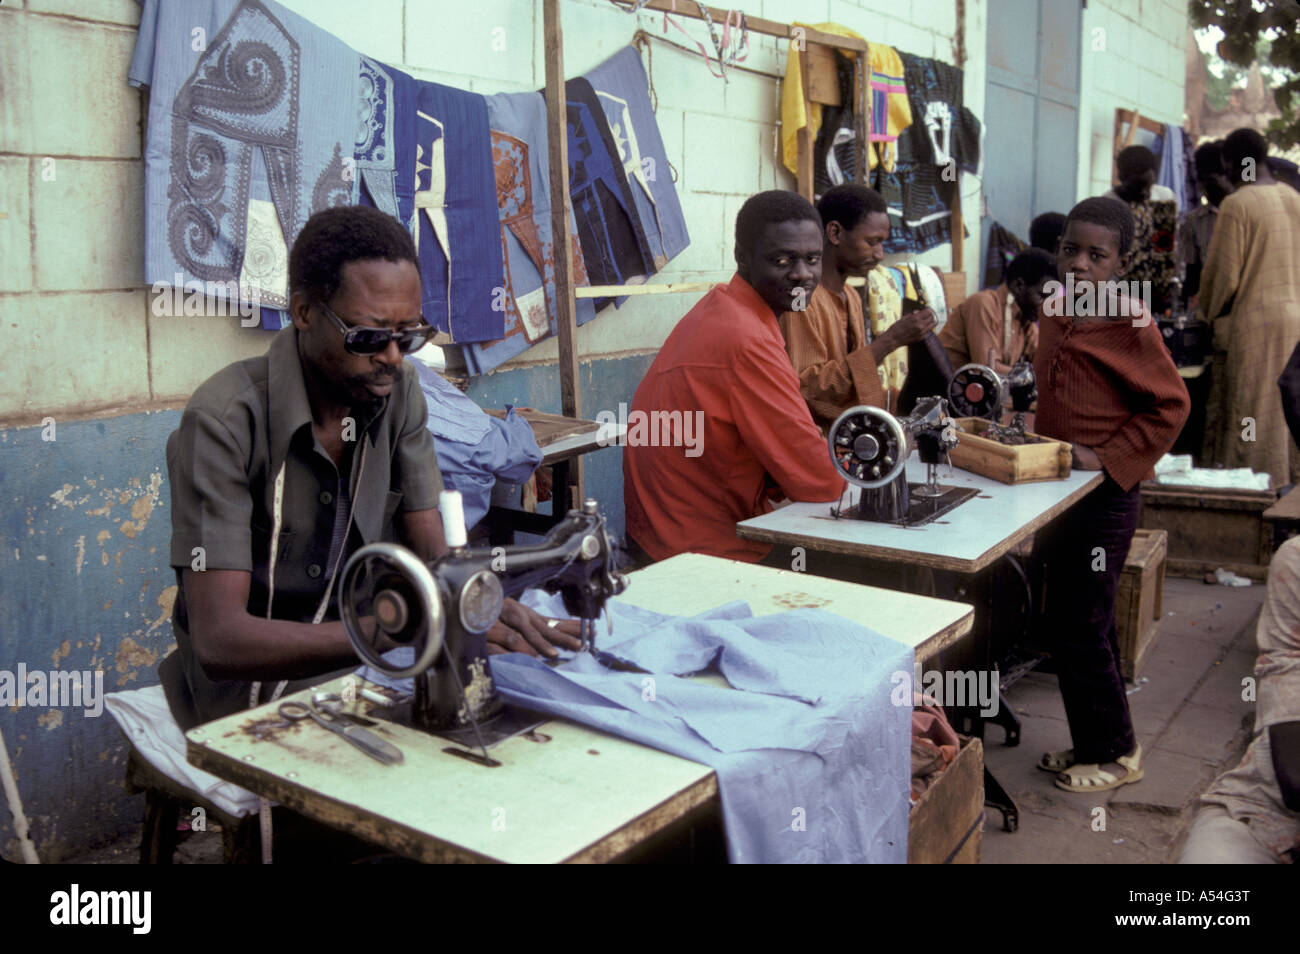 Painet HQ1411 mali sarti lavoro abbigliamento bamako economia immagini di occupazione del paese del lavoro nazione in via di sviluppo meno economicamente Foto Stock